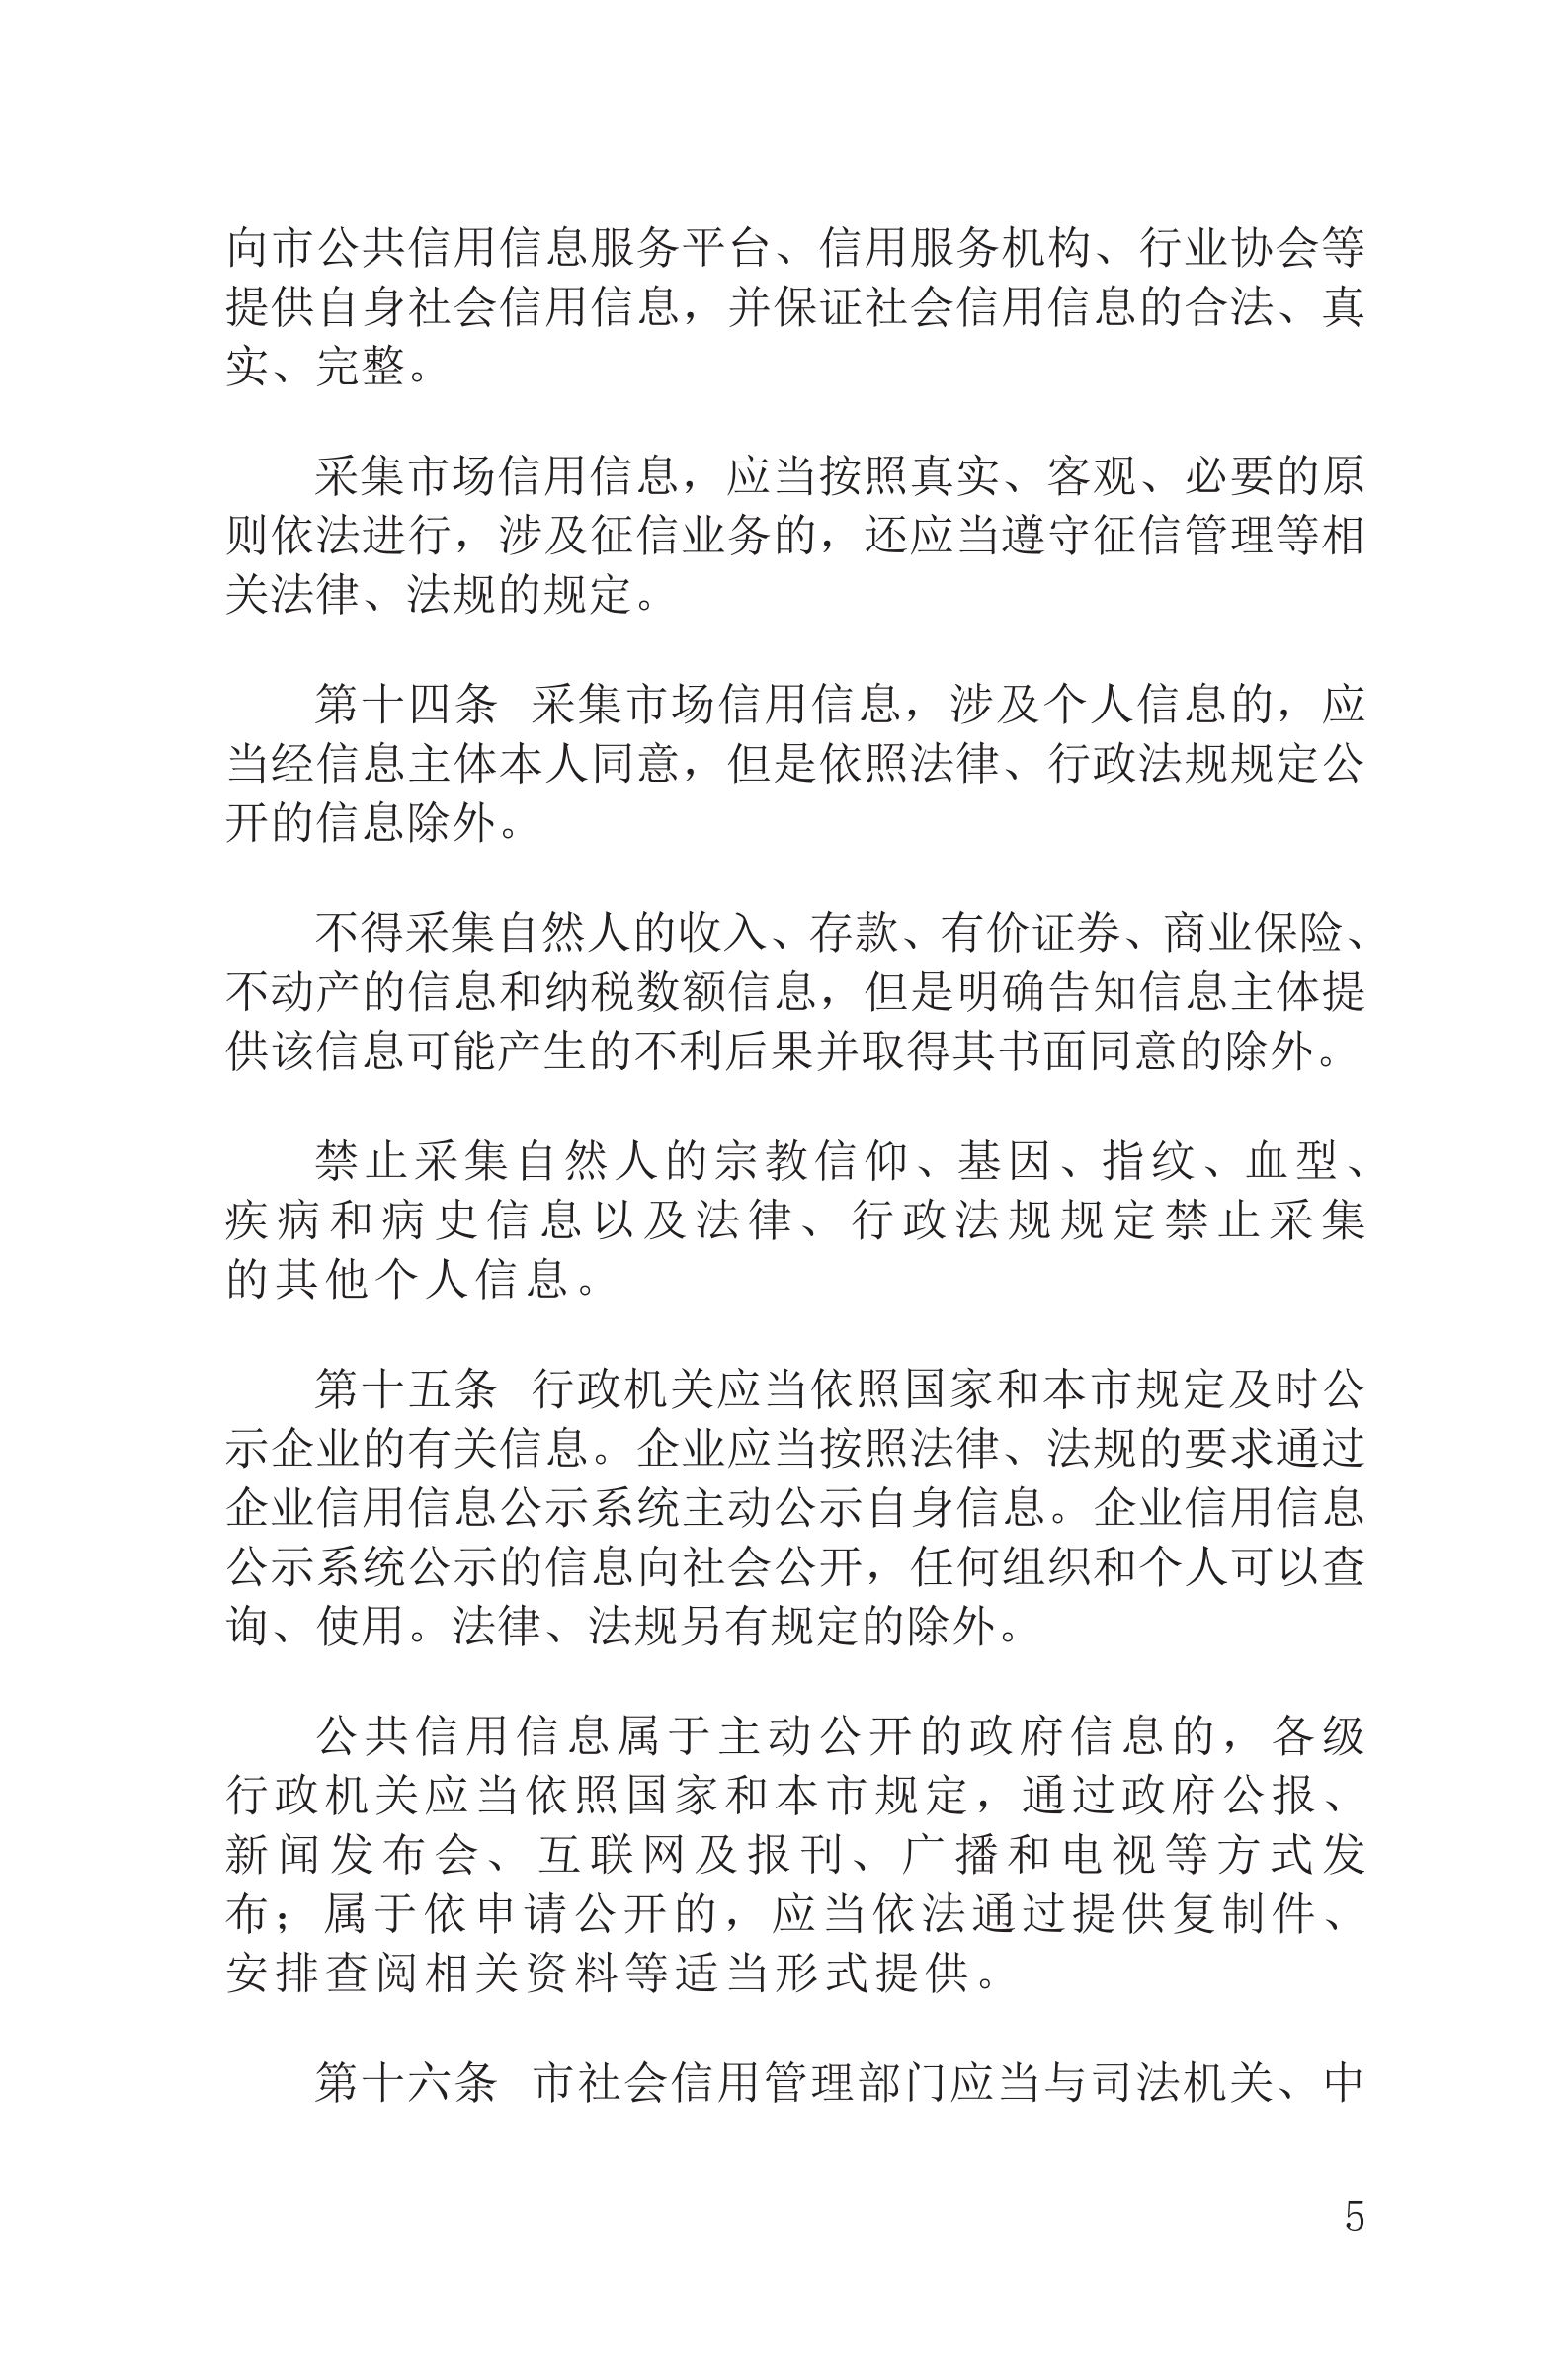 上海市社会信用条例_06.png